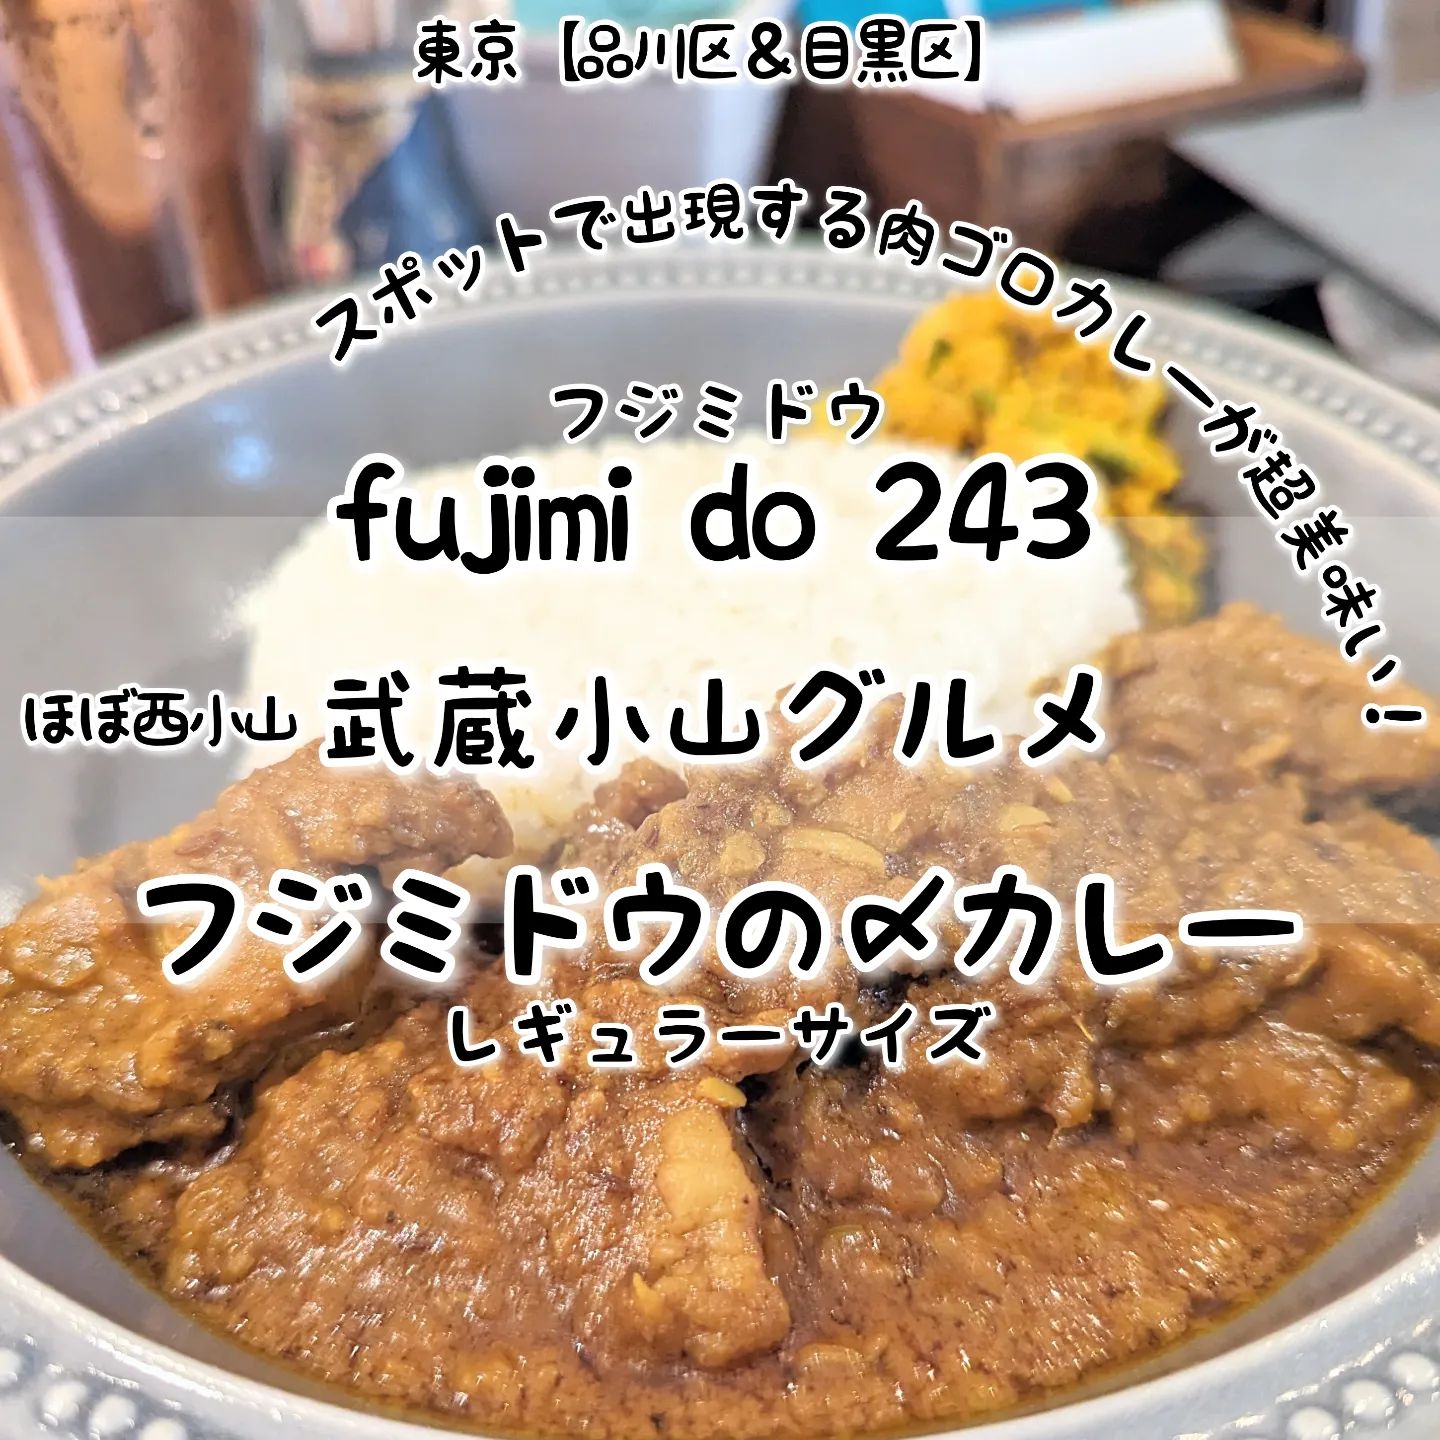 武蔵小山のグルメ情報「フジミドウ(fujimi do 243)」～フジミドウの〆カレー～あっさり系－－☆－－こってり系オールド系－－☆－－ニュー系おもいで度－－－☆－ #侍猫度スパイスの味わいが広がる肉がゴロゴロ過ぎるカレーが美味しい！ルーがほぼ肉で構成されているゴロゴロ肉の贅沢なルーとなっておりまして、このゴロ肉ルーを口の中に入れた瞬間いろんなスパイスの香りと味わいが口いっぱいに広がる本格カレーに仕上げてきております！もちろんこのスパイス達が食欲スイッチをオンにする激ウマなカレーとなっておりますので、サイズにつきましてはスモールな〆サイズよりレギュラーサイズがおすすめでございます！ちなみにこのゴロ肉カレーは普段食べられないスポットメニューとなっておりますので、カレーの日につきましてはインスタ情報を要チェックでございます！フジミドウ(fujimi do 243)@fujimido243こちらは、2018年10月オープンしたモツ系イタリアンのお店でございます。お店に入りますと、カウンター席が並びつつ2階と外にも席がございまして、綺麗でお洒落な空間が広がっております。カウンター内には、お話上手なお姉様がいますので、お一人様も初めての方も安心のお店でございます。どうやらお姉様は、今は無き武蔵小山りゅえるのユーザーとの事で、そして好きなパルム商店街のお店はサンリオショップというかなりパルム商店街通でございました。ちなみにお店のロゴマークは、雲から顔をだしてる鏡富士で、数字の上下にある雲はモツをイメージしたモツ雲とのことでございますぞ！場所は、武蔵小山駅から西小山駅へ行きまして、西小山駅からフルーツ一実屋さんのあるにこま通りを原町方面へ進んでかむろ坂通り50m手前位にございます。以前、波止場のあった近くでございますね。【侍猫でシェア】ストーリーズでシェア希望の方はお気軽にご連絡ください！すぐシェアいたします！【侍猫を応援】ぜひとも「フォロー」＆「いいね」＆「保存」お願いいたします！→ @musashikoyama.news #武蔵小山 #武蔵小山グルメ #武蔵小山グルメ情報 #西小山 #戸越銀座 #不動前 #碑文谷 #戸越 #中延 #荏原中延 #目黒本町 #下目黒 #品川区 #品川区グルメ #目黒区 #目黒区グルメ #東京 #東京グルメ #東京散歩 #東京観光 #東京旅行#東京カレー #カレー #fujimido243 #フジミドウ